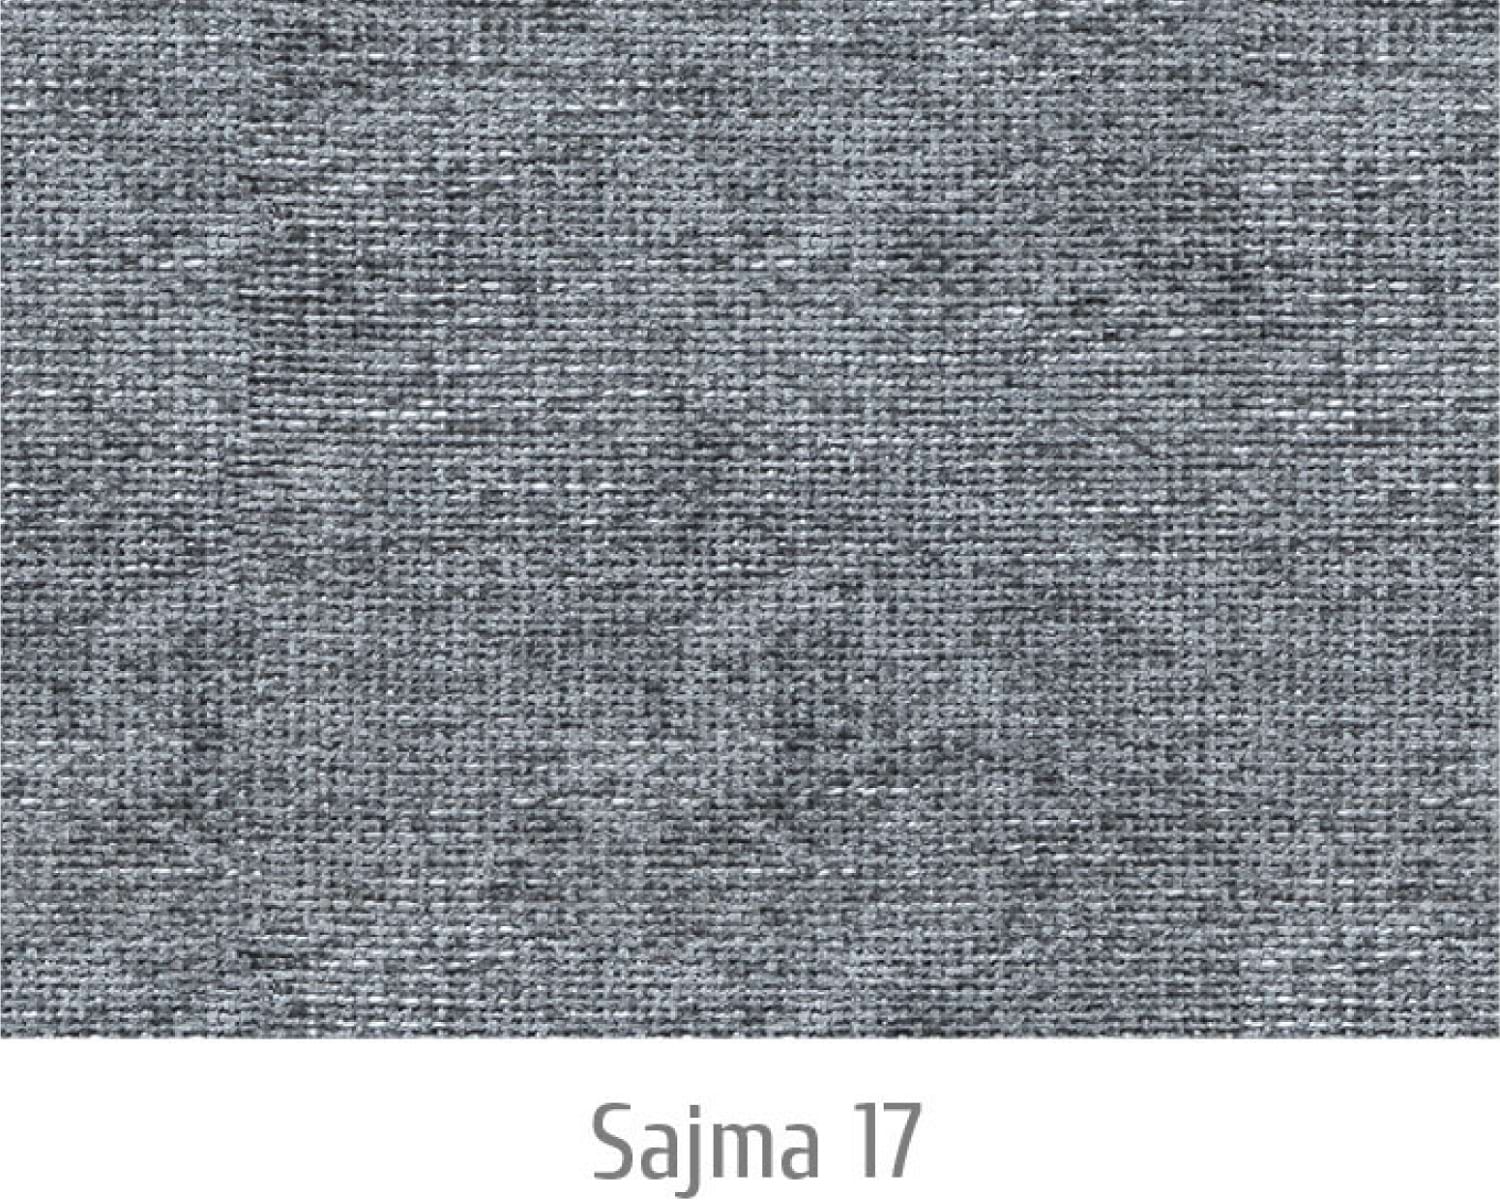 Sajma17